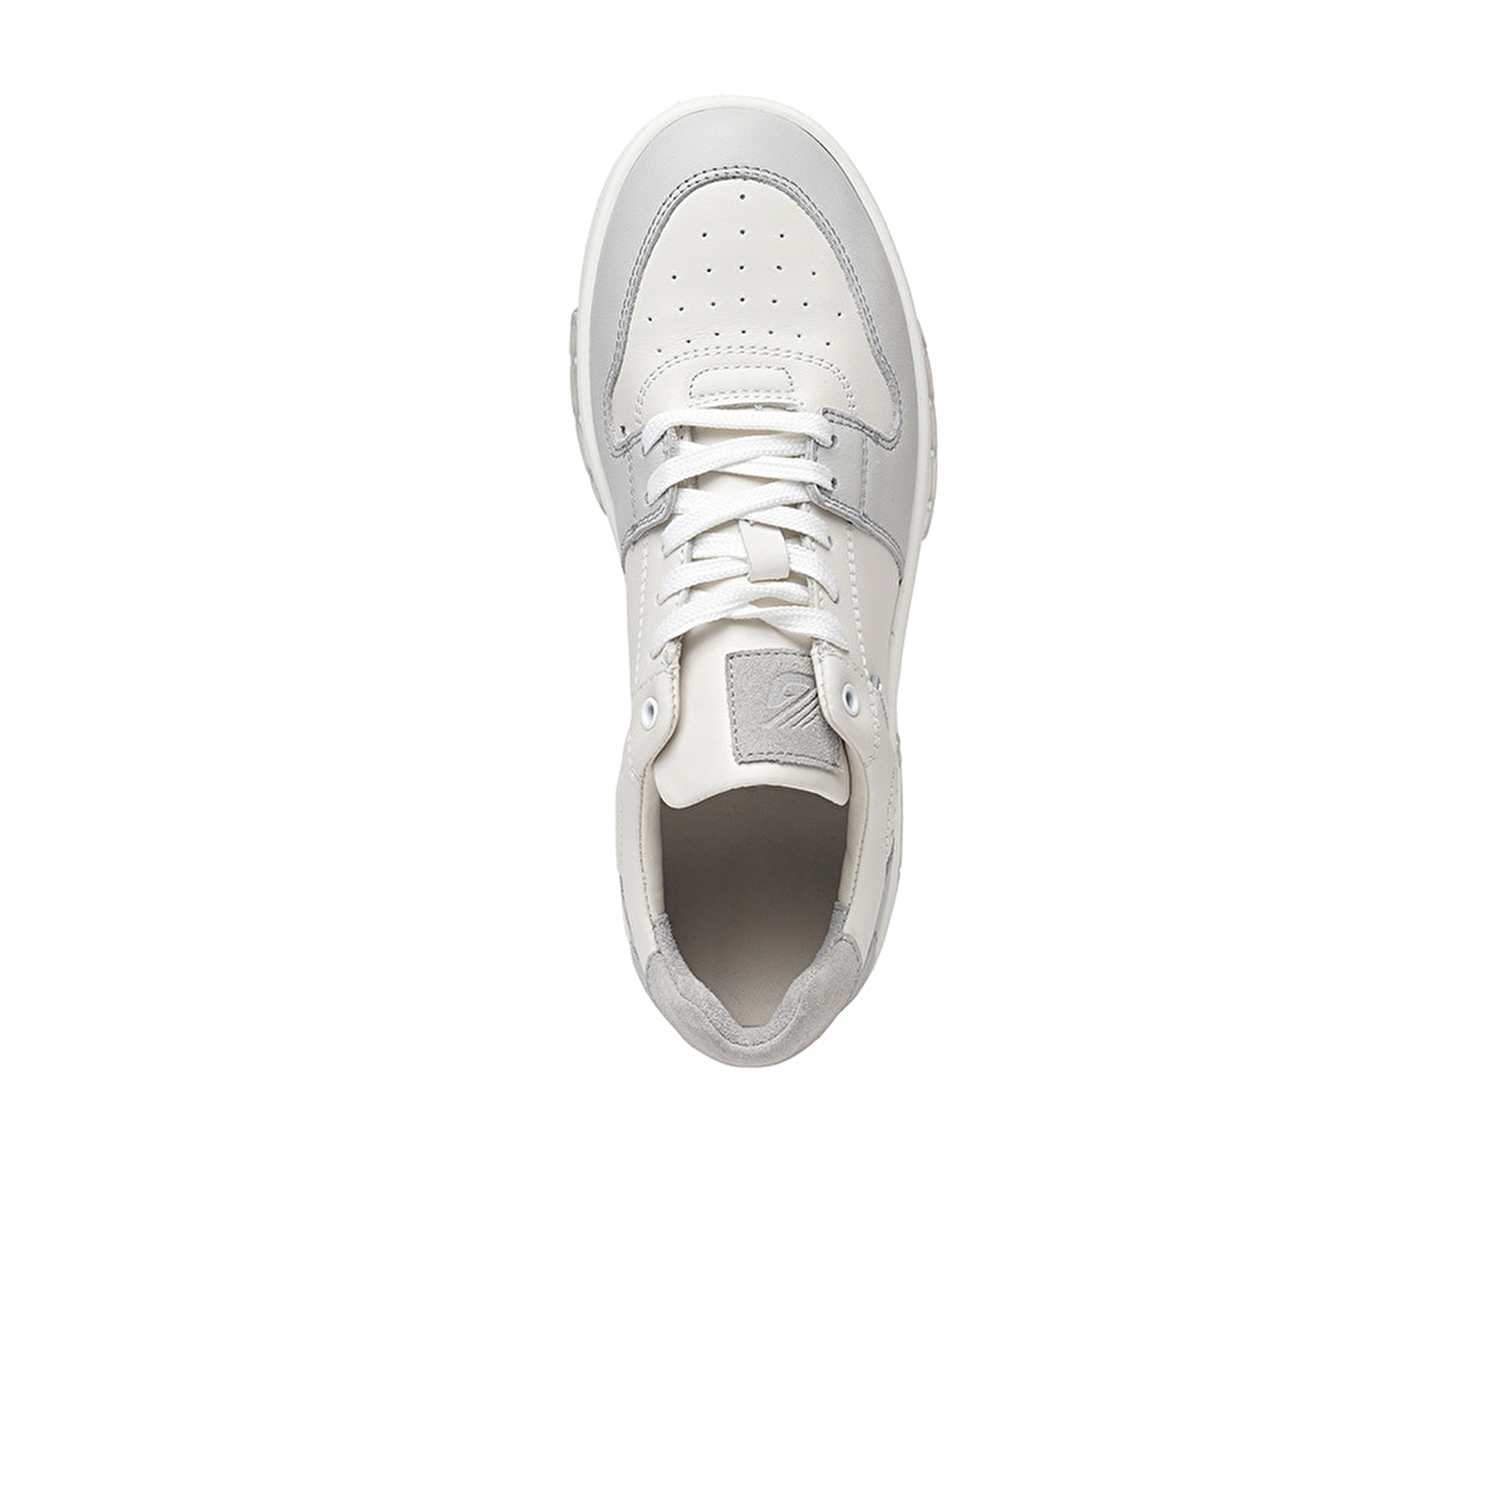 Kadın Beyaz Gri Hakiki Deri Sneaker Ayakkabı 3K2SA33021-4